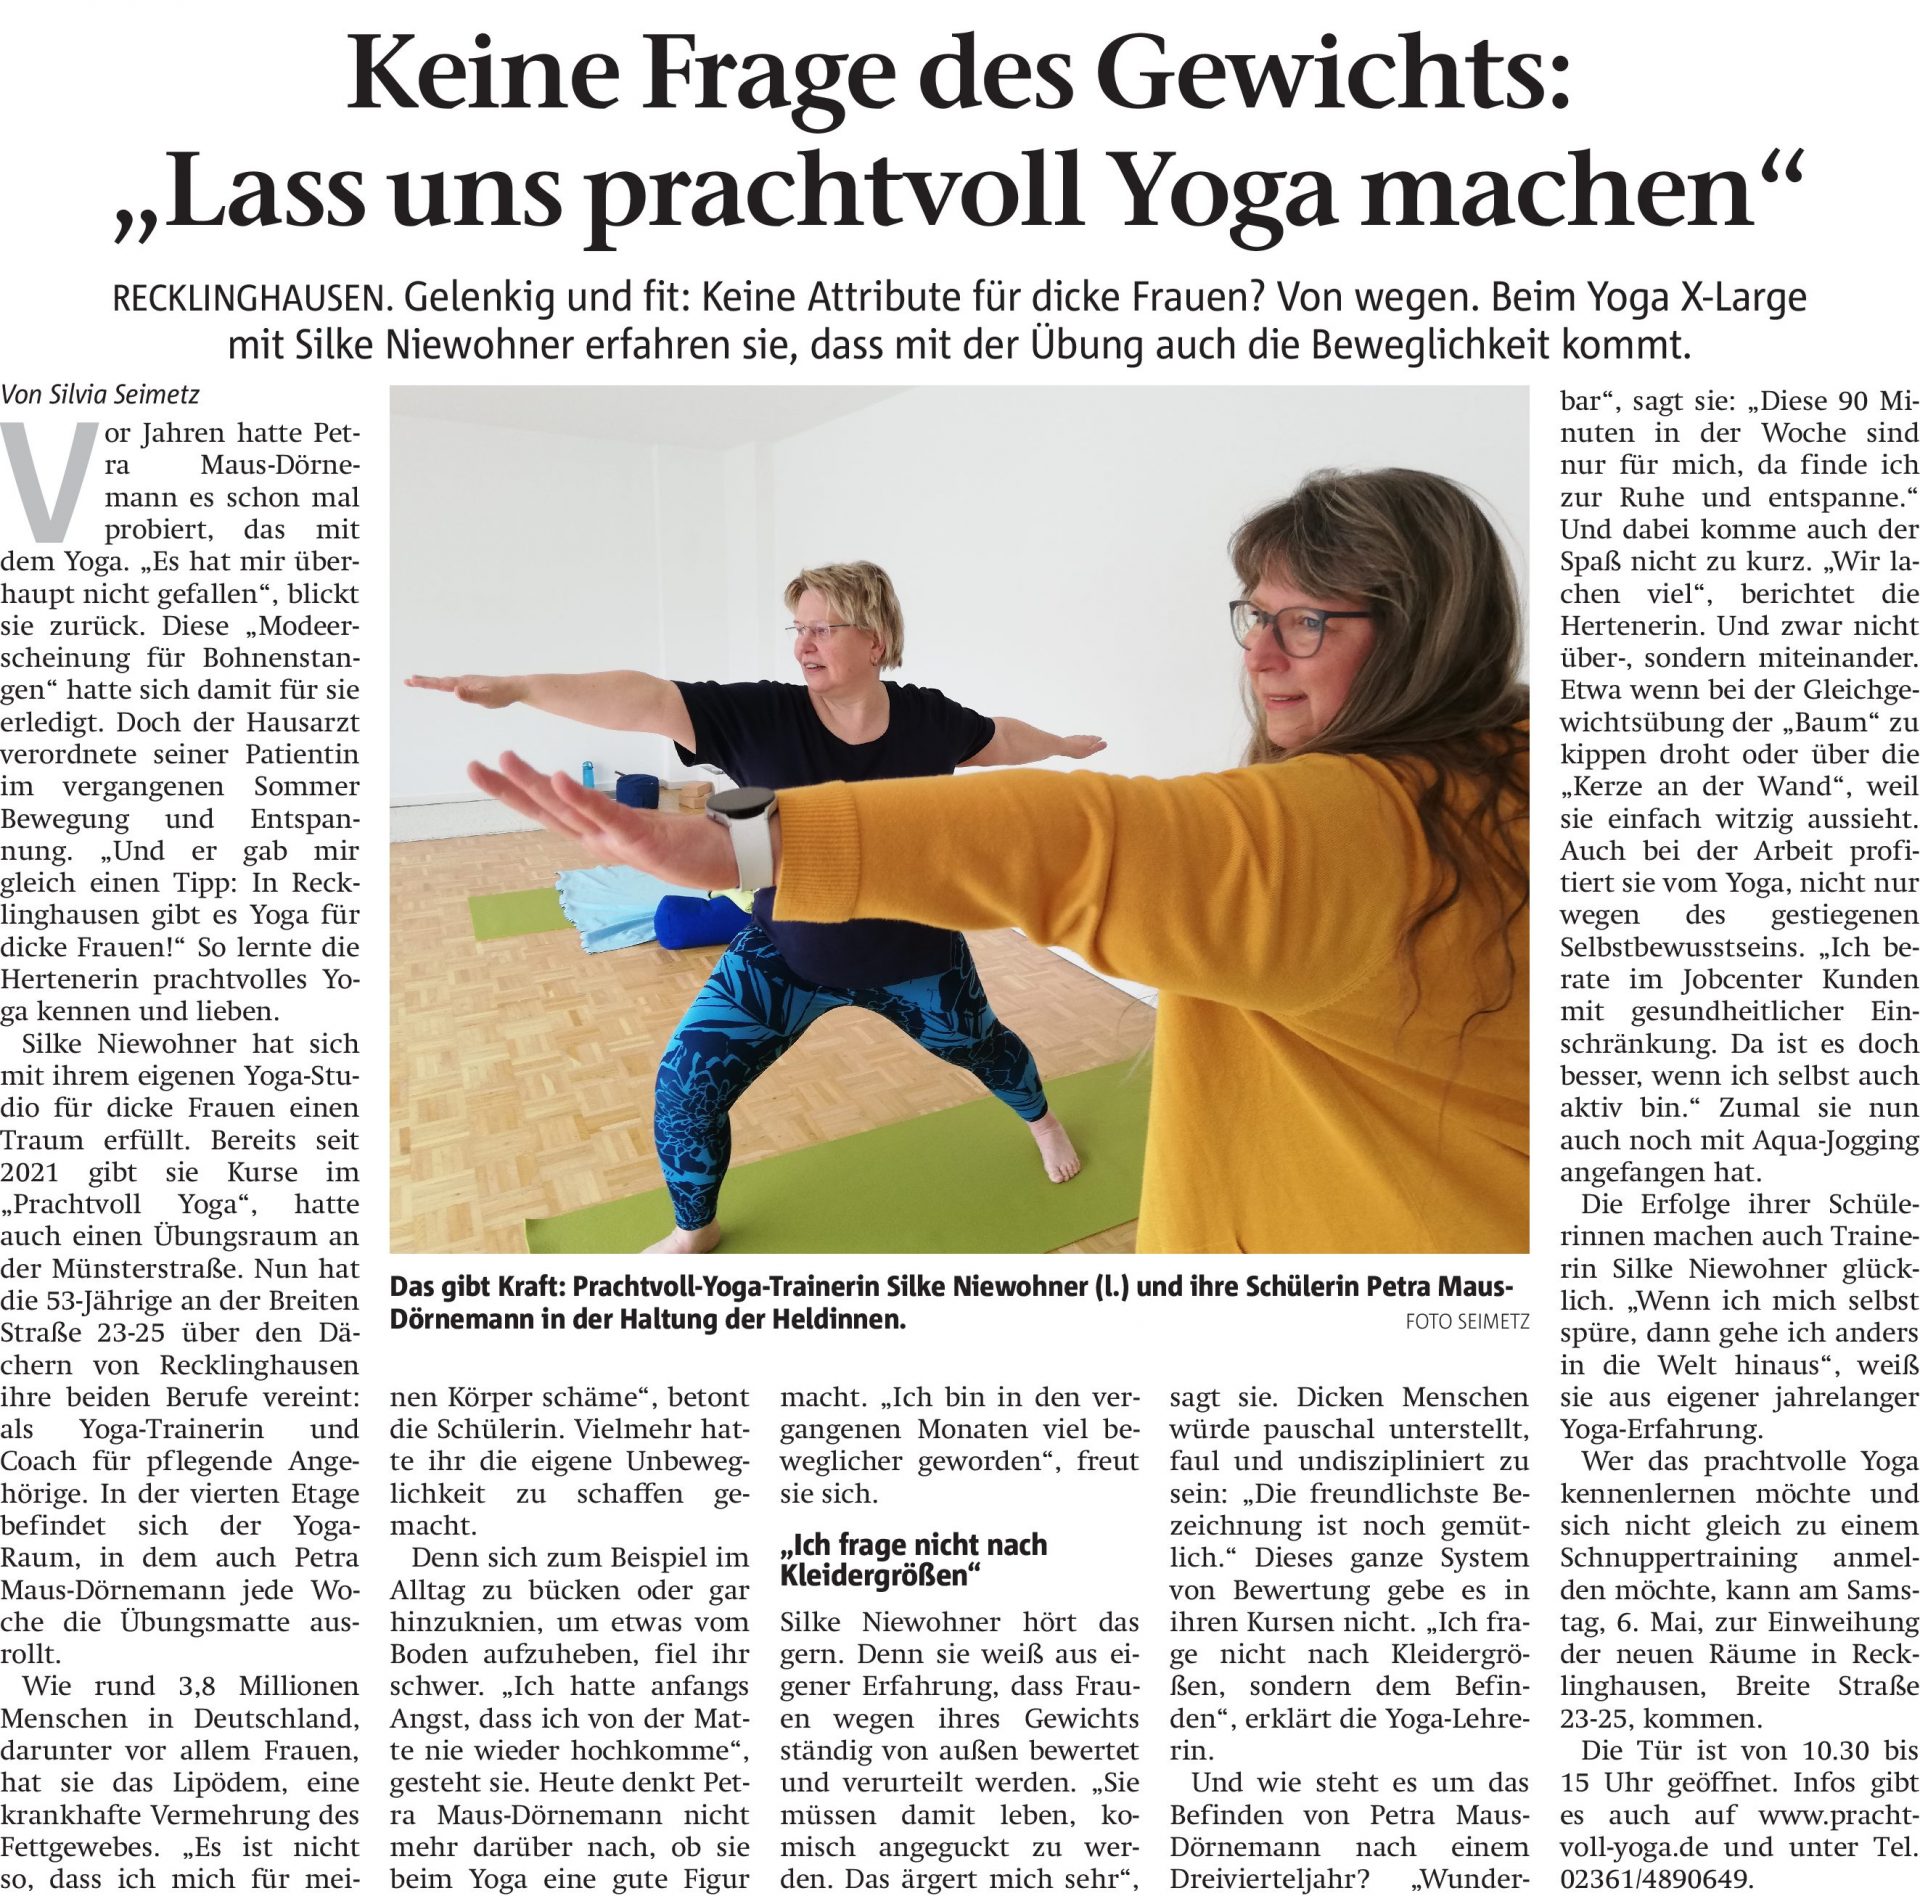 Zeitungsartikel zum Thema Yoga Frauen in Recklinghausen. Titel: Keine Frage des Gewichts: "Lass uns prachtvoll Yoga machen" (Aus RZ 24.04.2023)